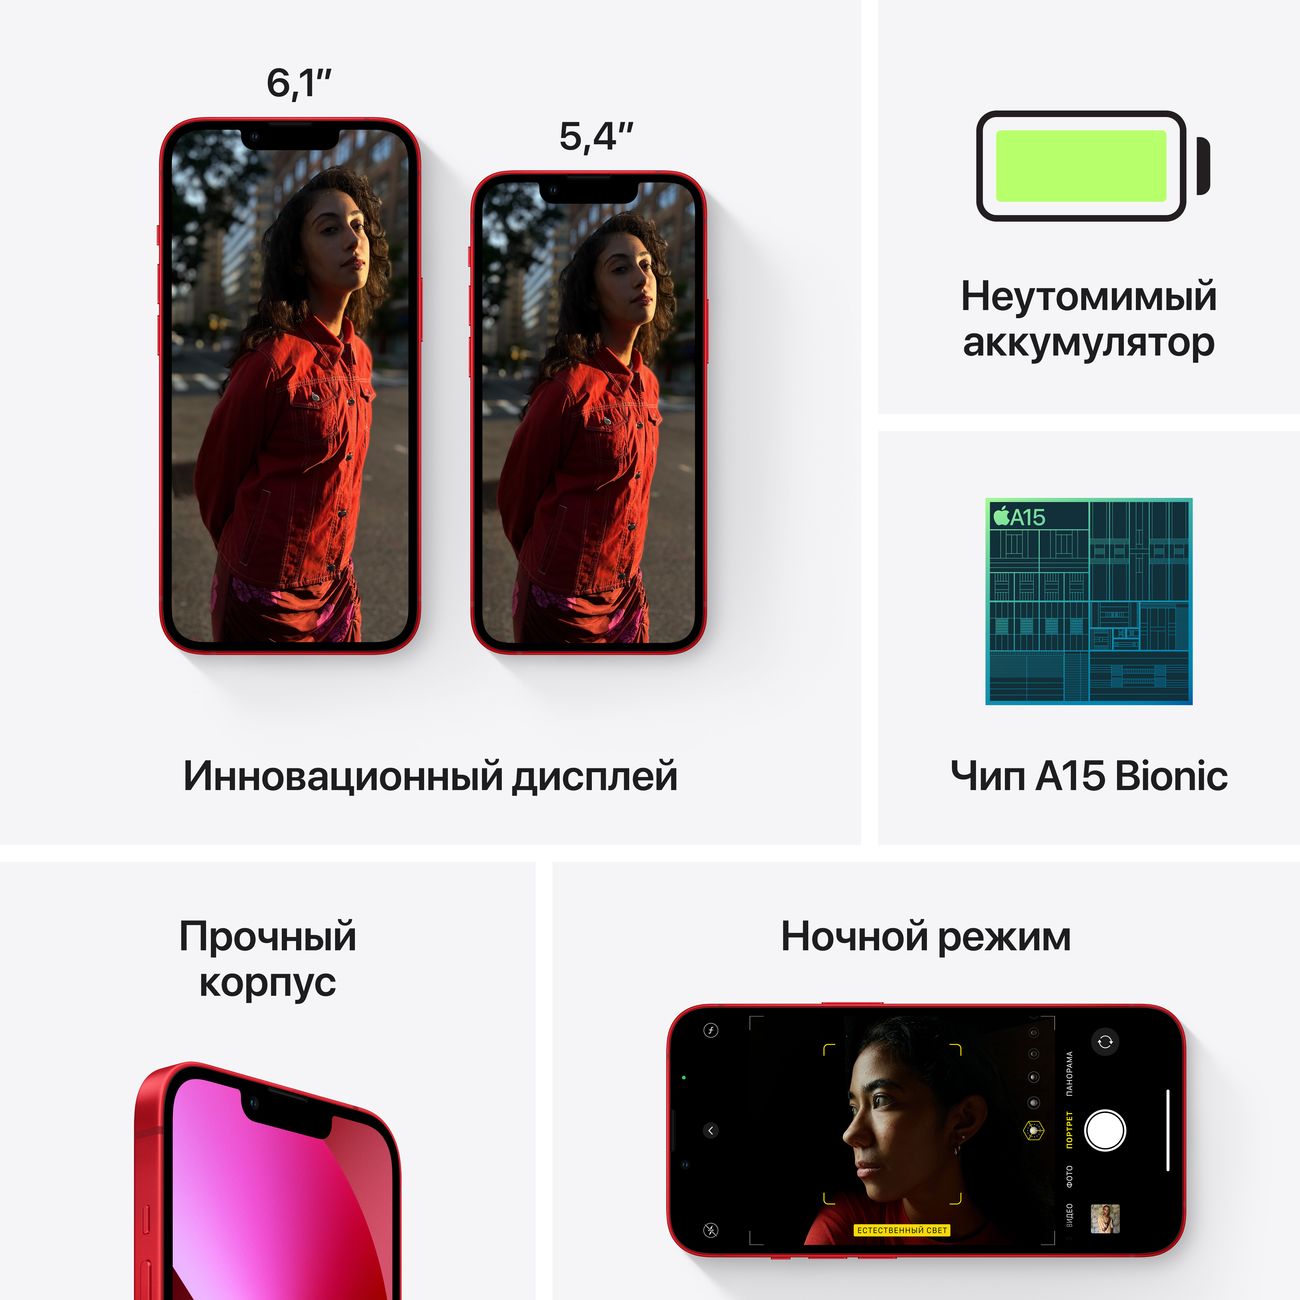 Купить смартфон apple iphone 13 128gb blue Apple iPhone 13 в официальном магазине Apple, Samsung, Xiaomi. iPixel.ru Купить, заказ, кредит, рассрочка, отзывы,  характеристики, цена,  фотографии, в подарок.